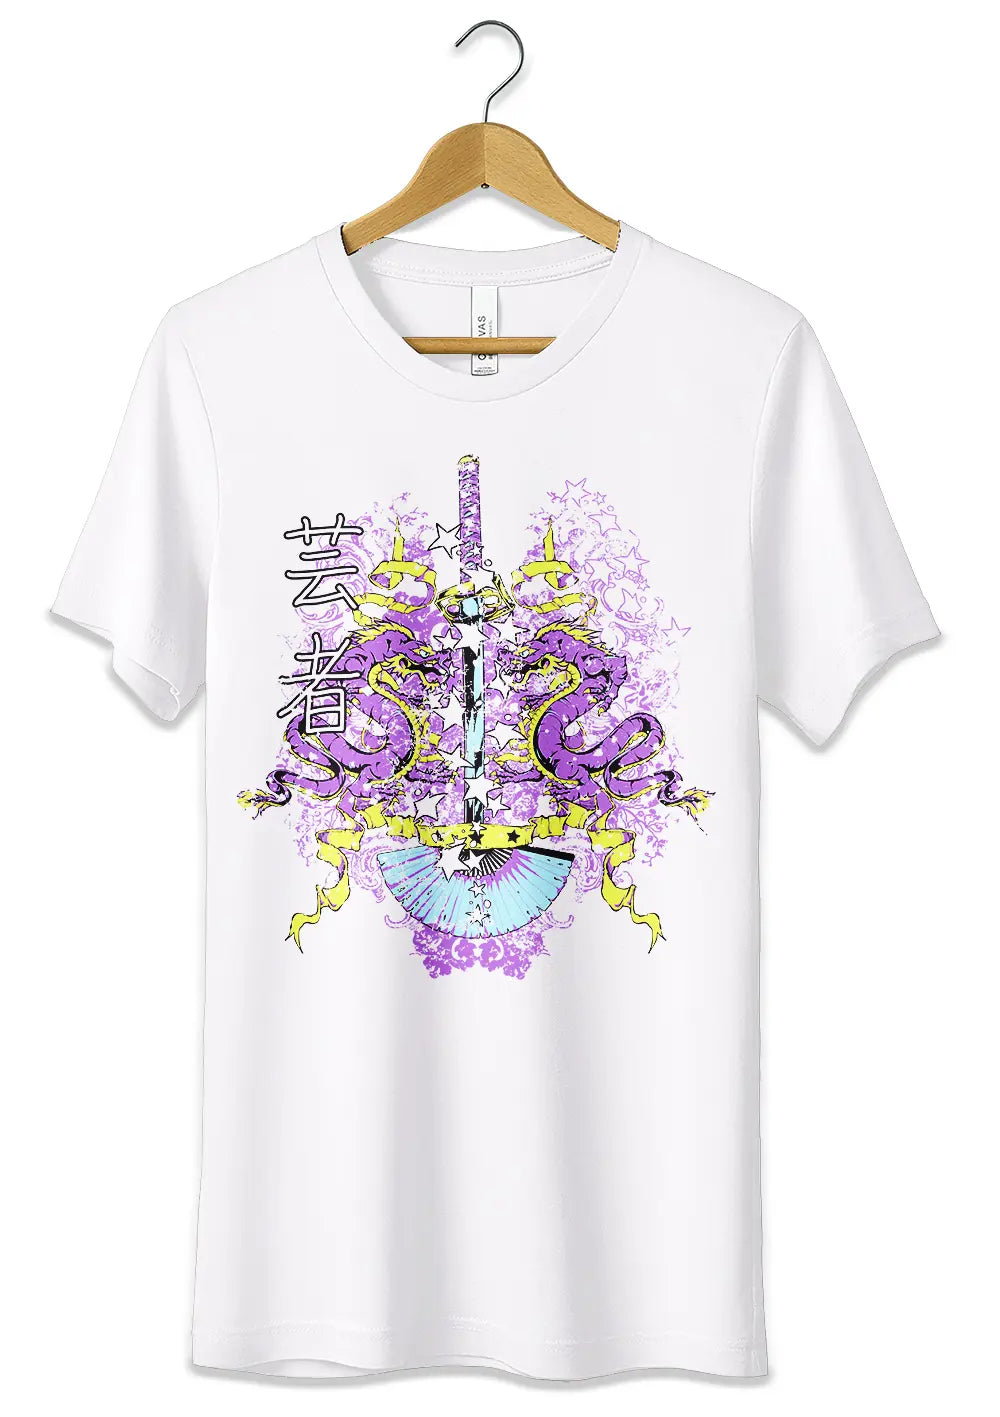 T-Shirt Maglietta Katana Dragoni Japan Urban Style, CmrDesignStore, T-Shirt, t-shirt-maglietta-katana-dragoni-japan-urban-style, CmrDesignStore